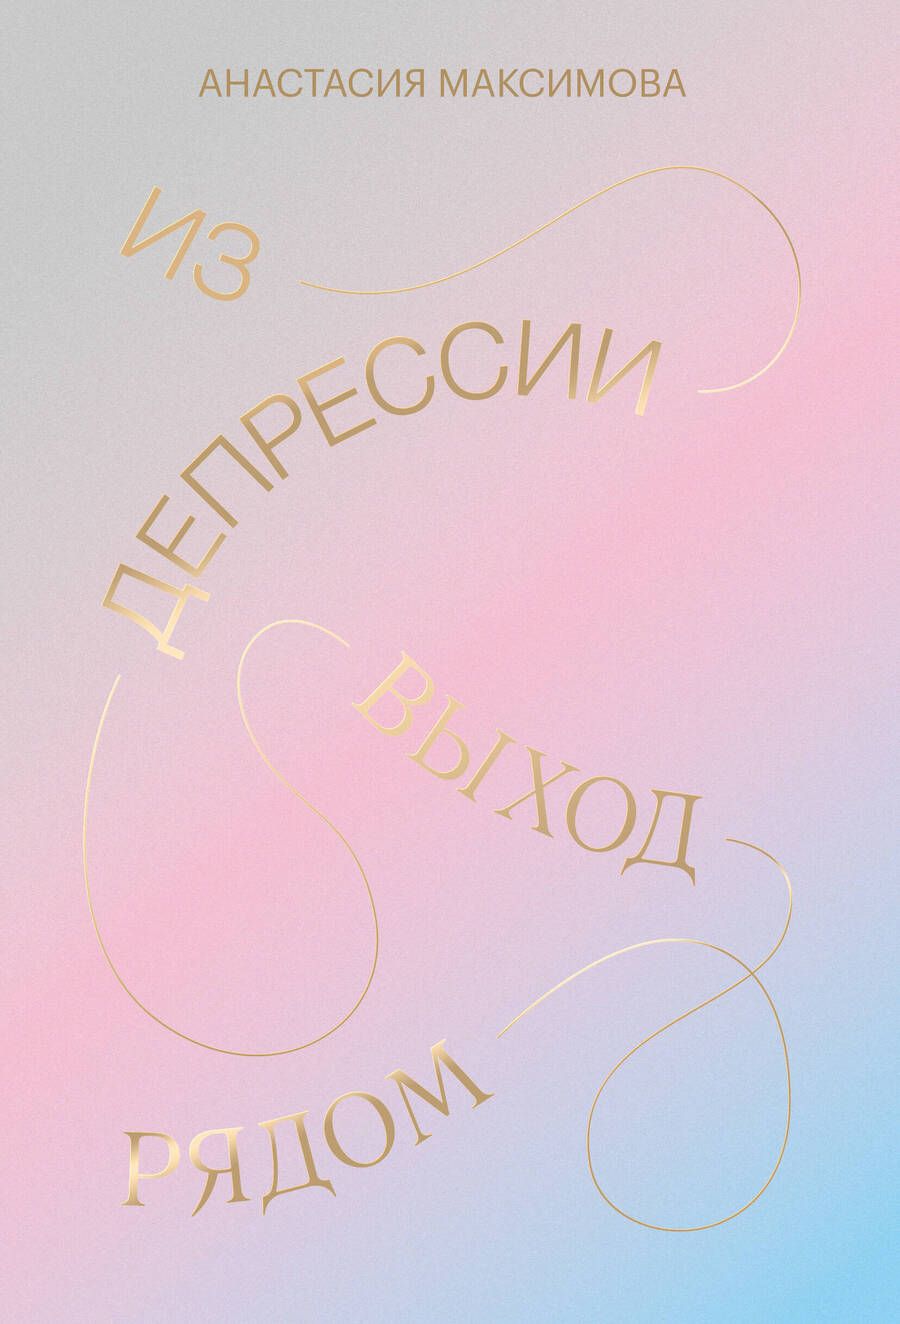 Обложка книги "Анастасия Максимова: Из депрессии. Выход рядом"